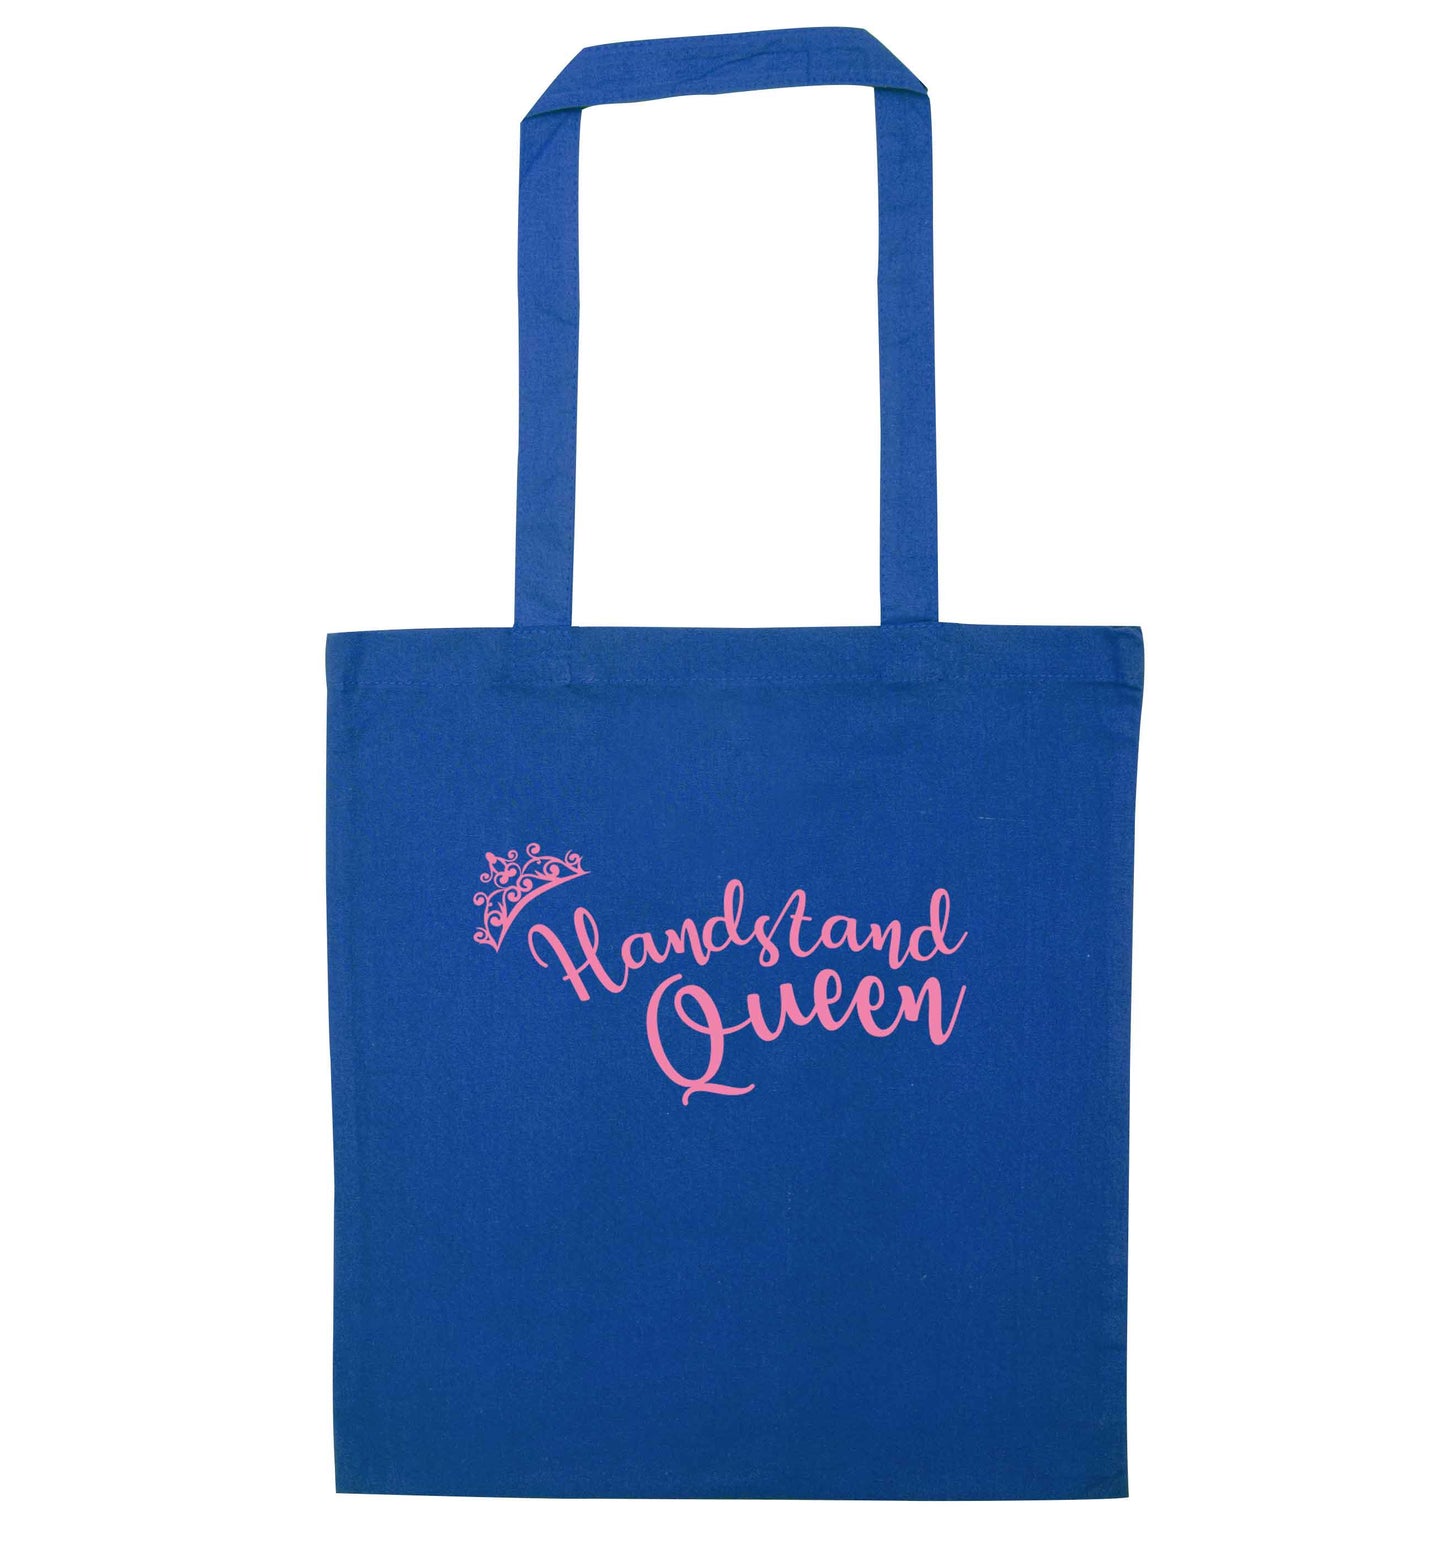 Handstand Queen blue tote bag